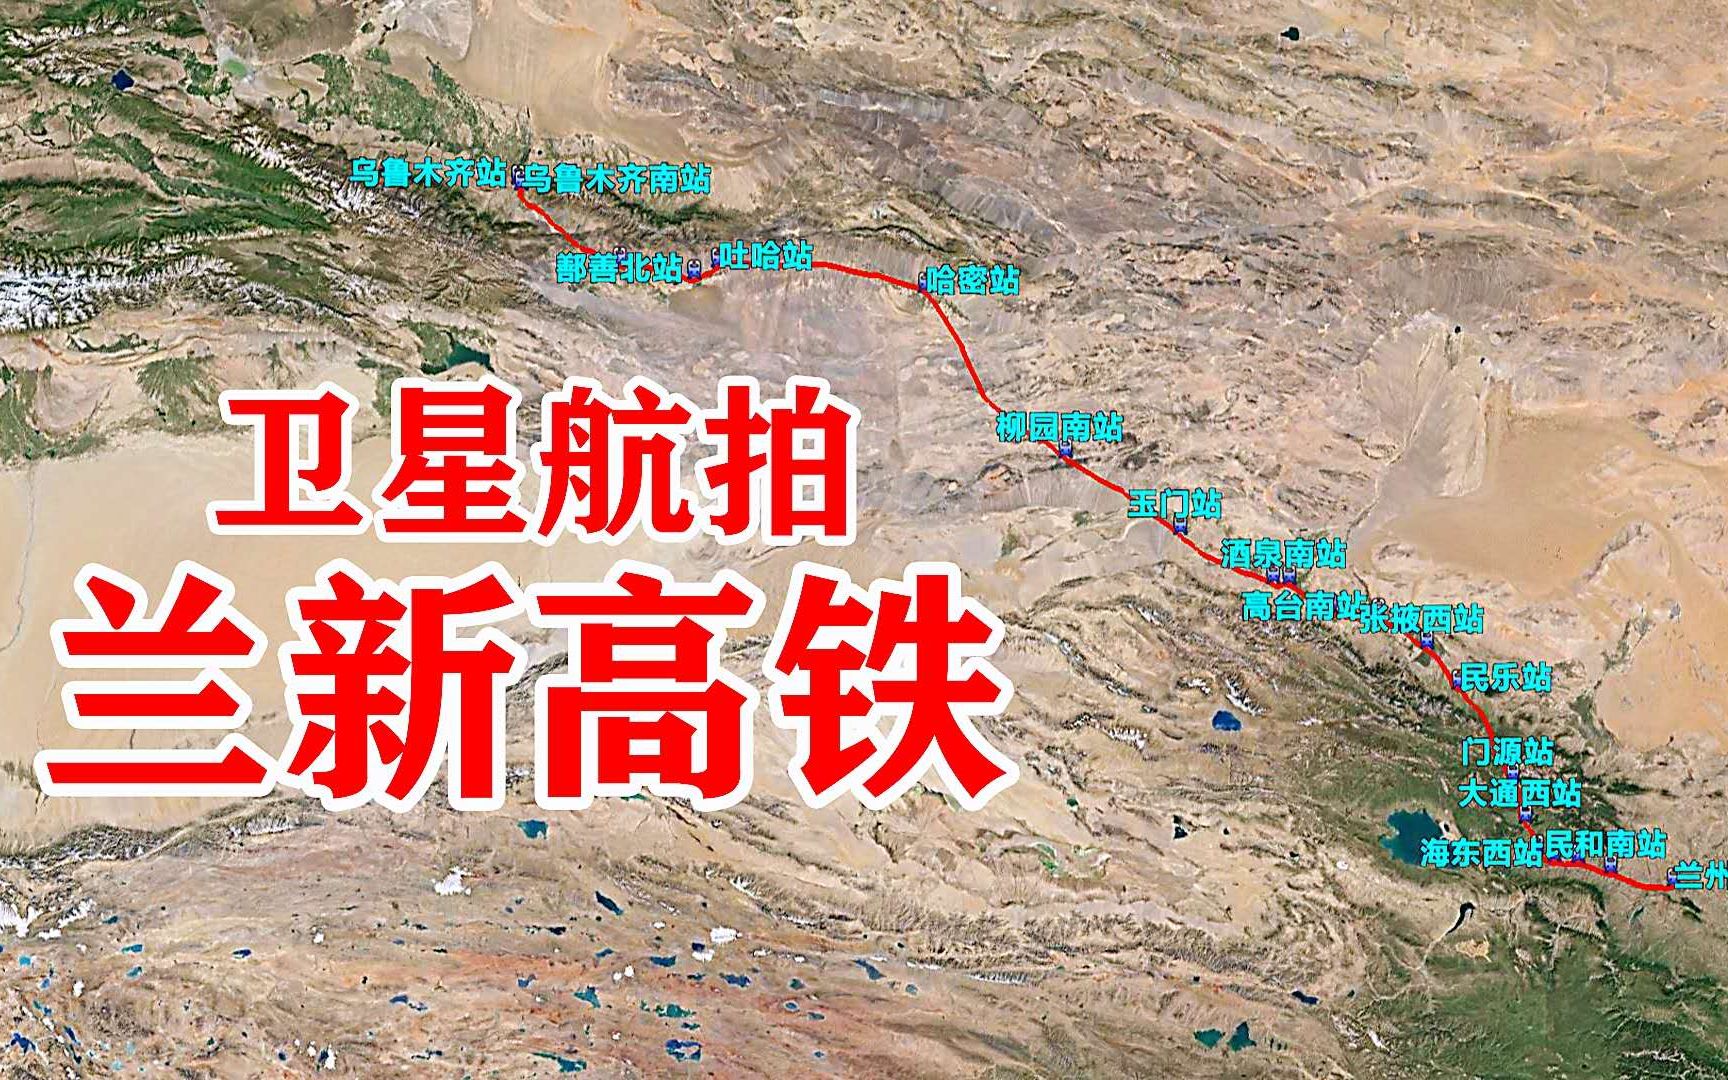 兰新高铁:全长1775公里途经甘肃青海新疆,一起领略西